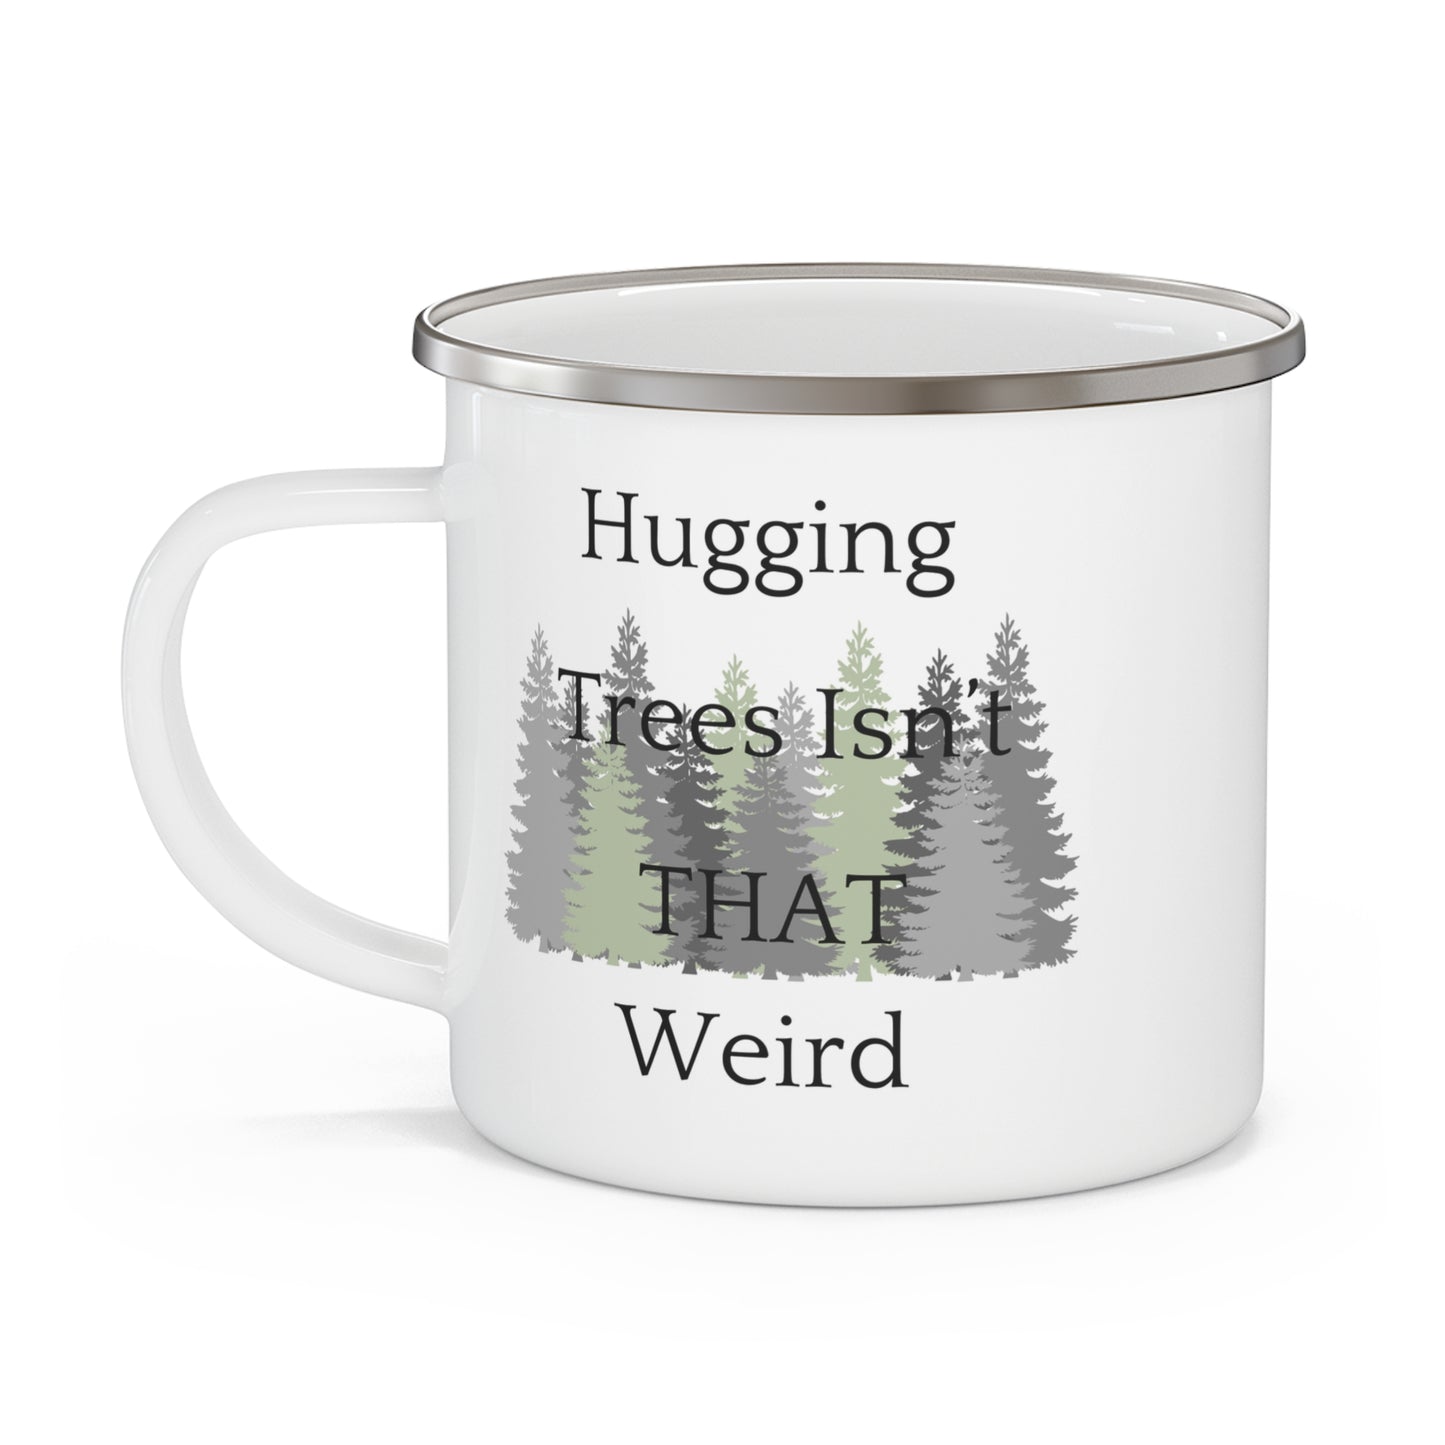 Hugging Trees Isn't THAT Weird, Enamel Camping Mug